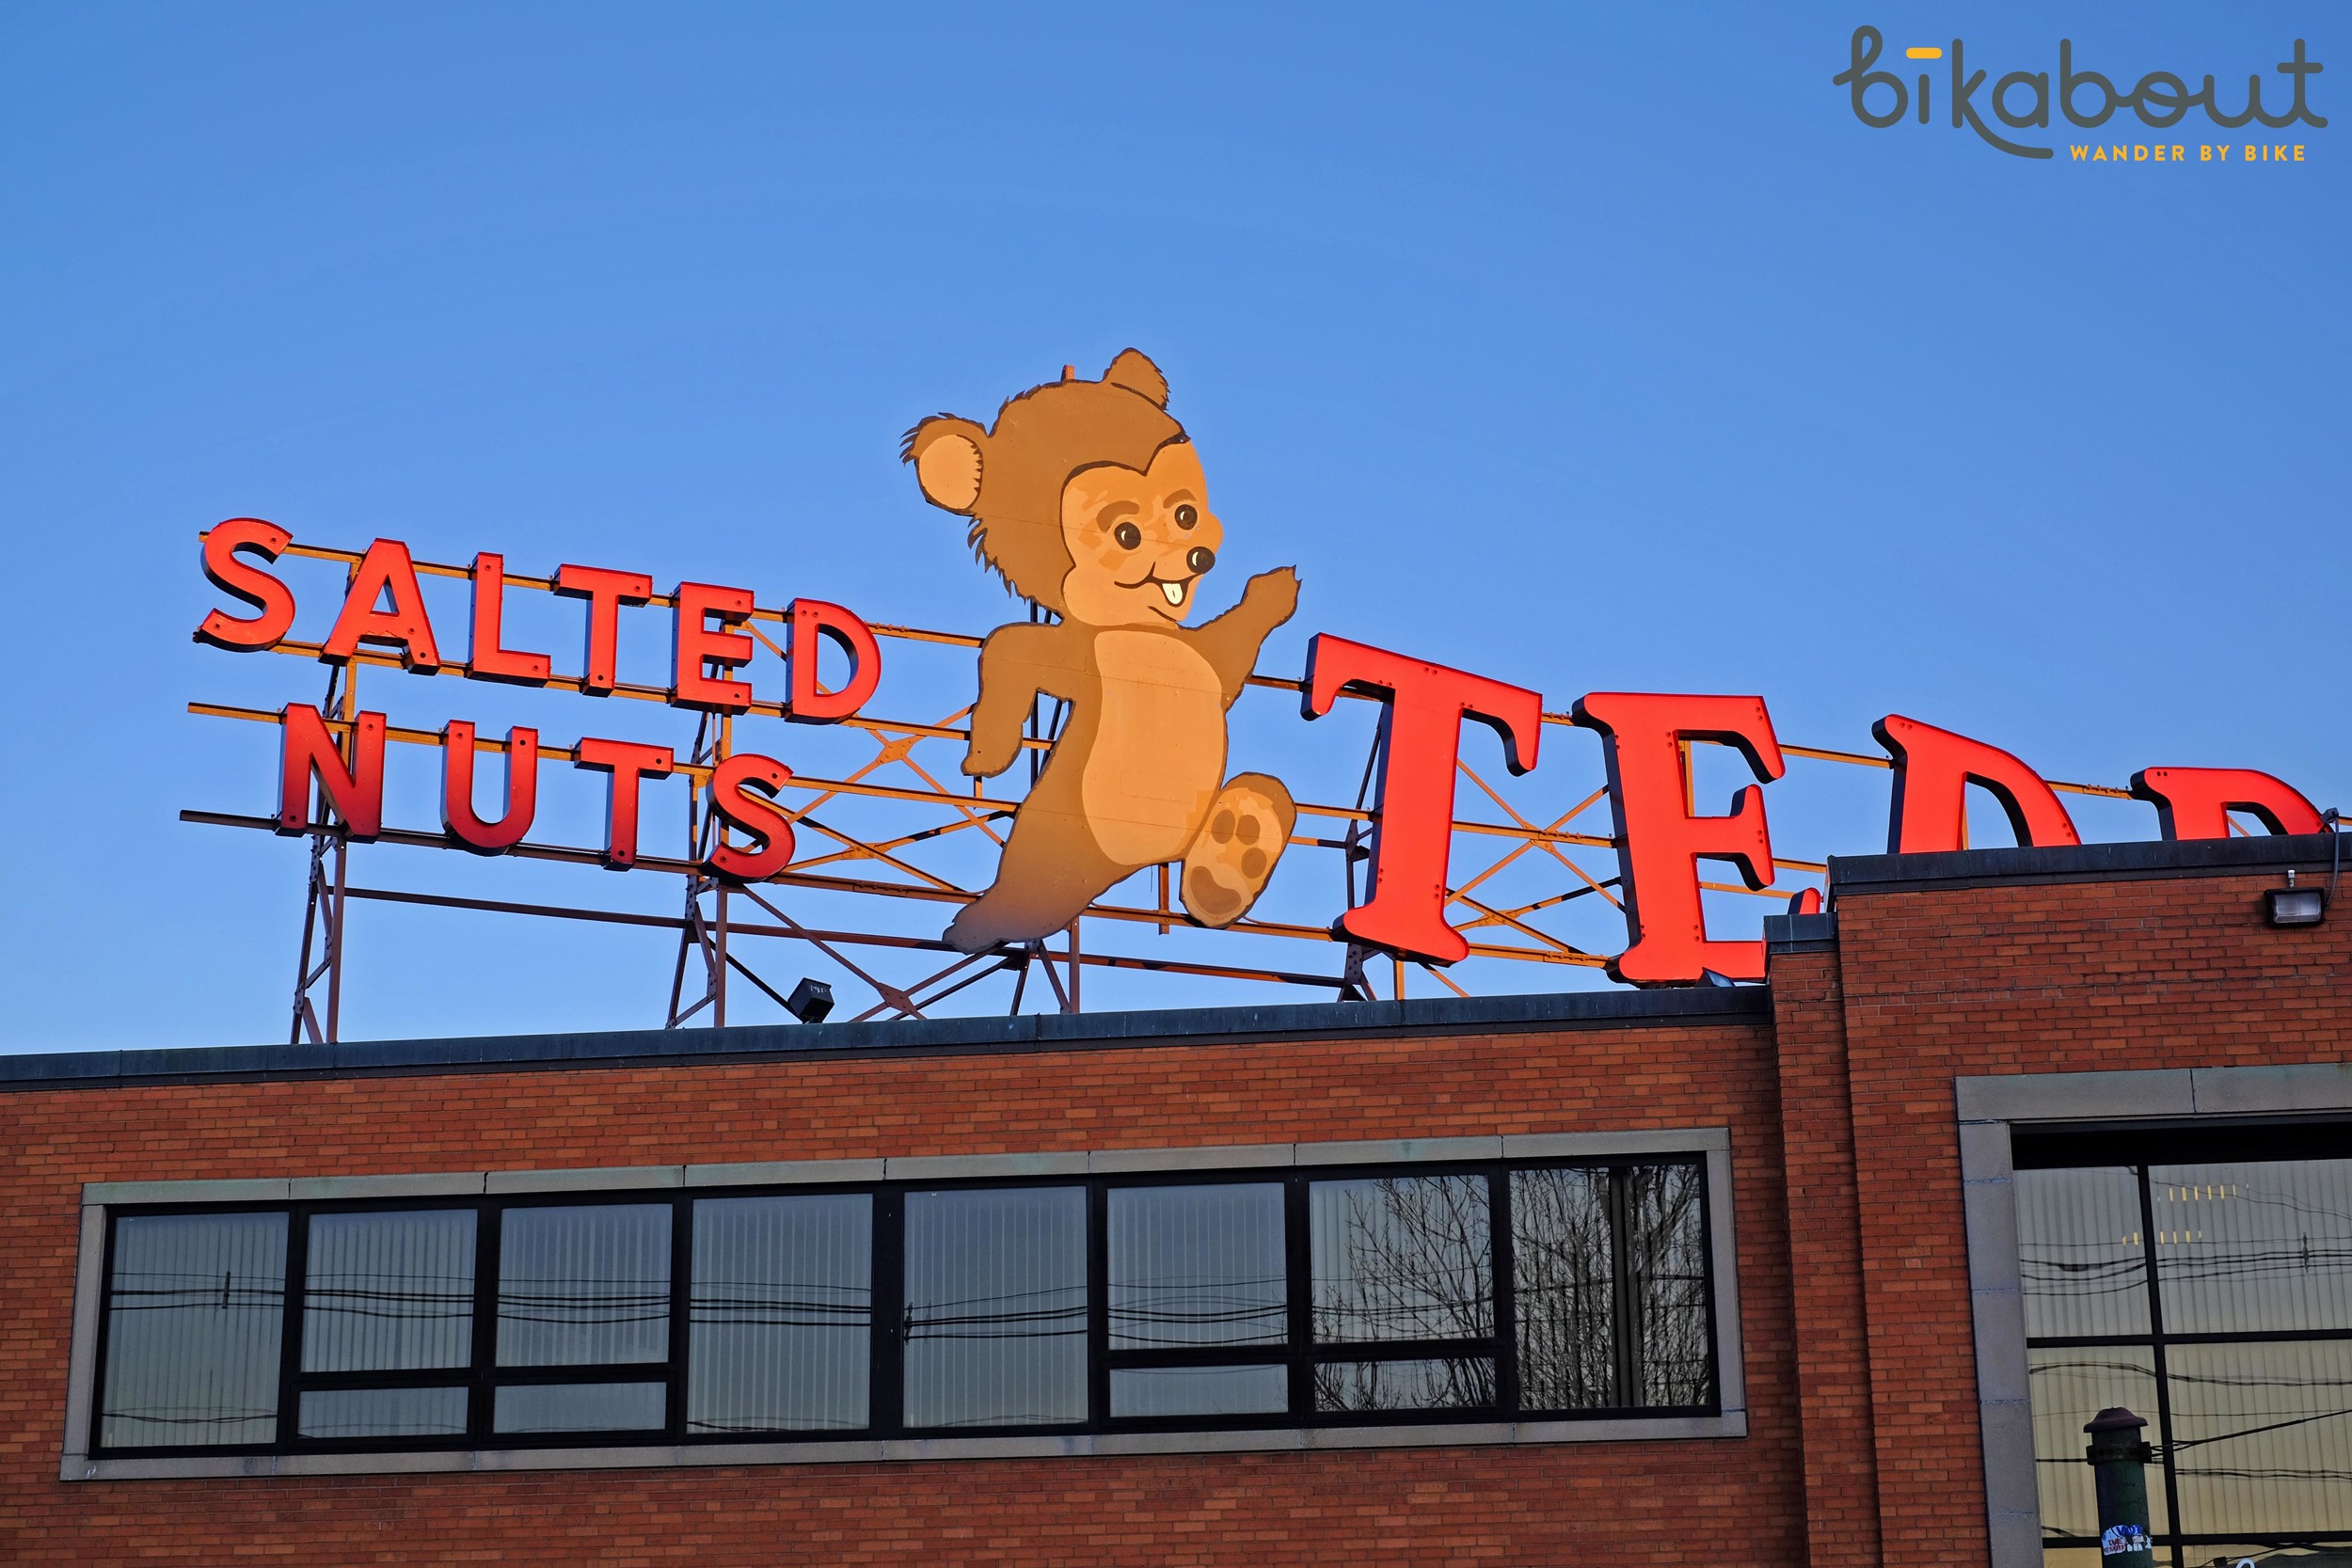 Bikabout-Boston-Teddie's-Peanut-Butter.jpg